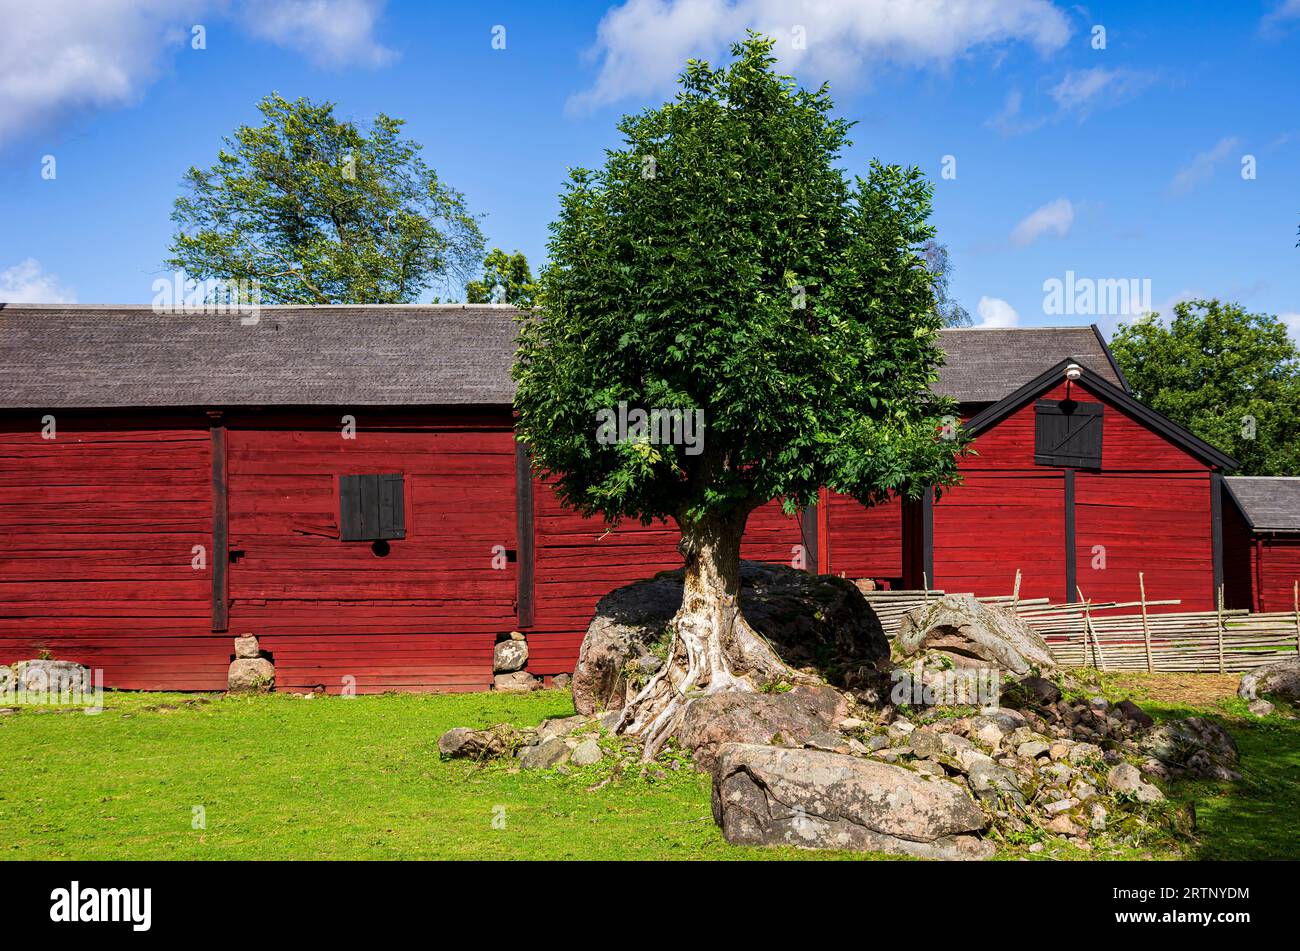 Stensjö by ist ein Dorf und Kulturreservat in Smaland bei Oskarshamn, Kalmar län, Schweden, das im frühen 19. Jahrhundert erhalten wurde. Stockfoto